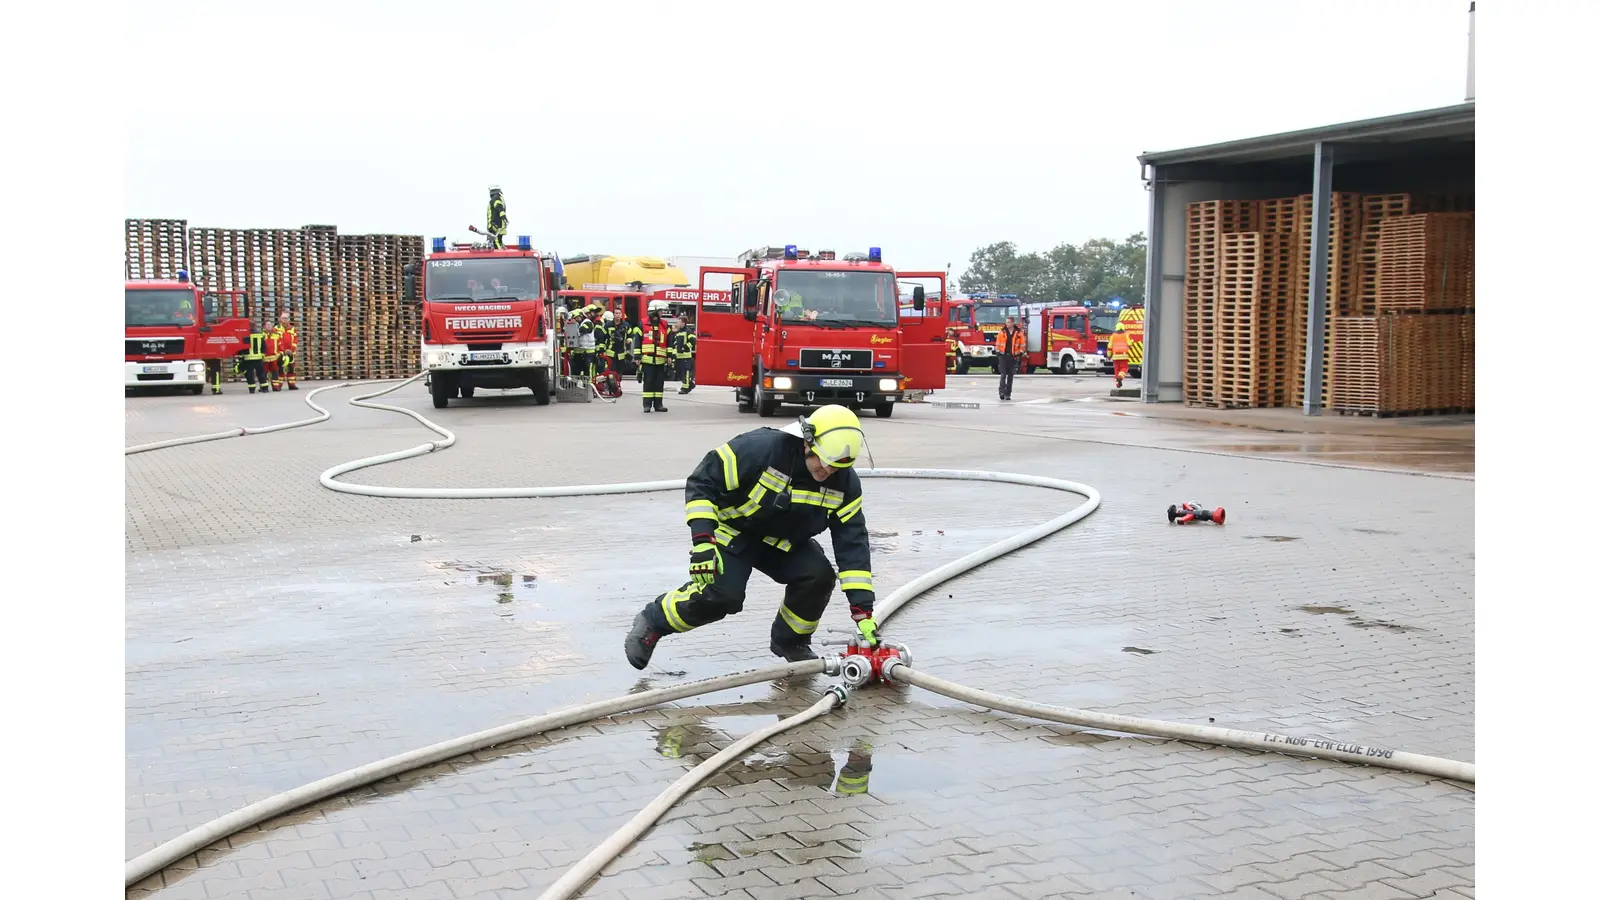 Rund 200 Feuerwehrleute vor allem aus der Region Hannover sind bei der Großübung im Einsatz. (Foto: Borchers, Bastian)